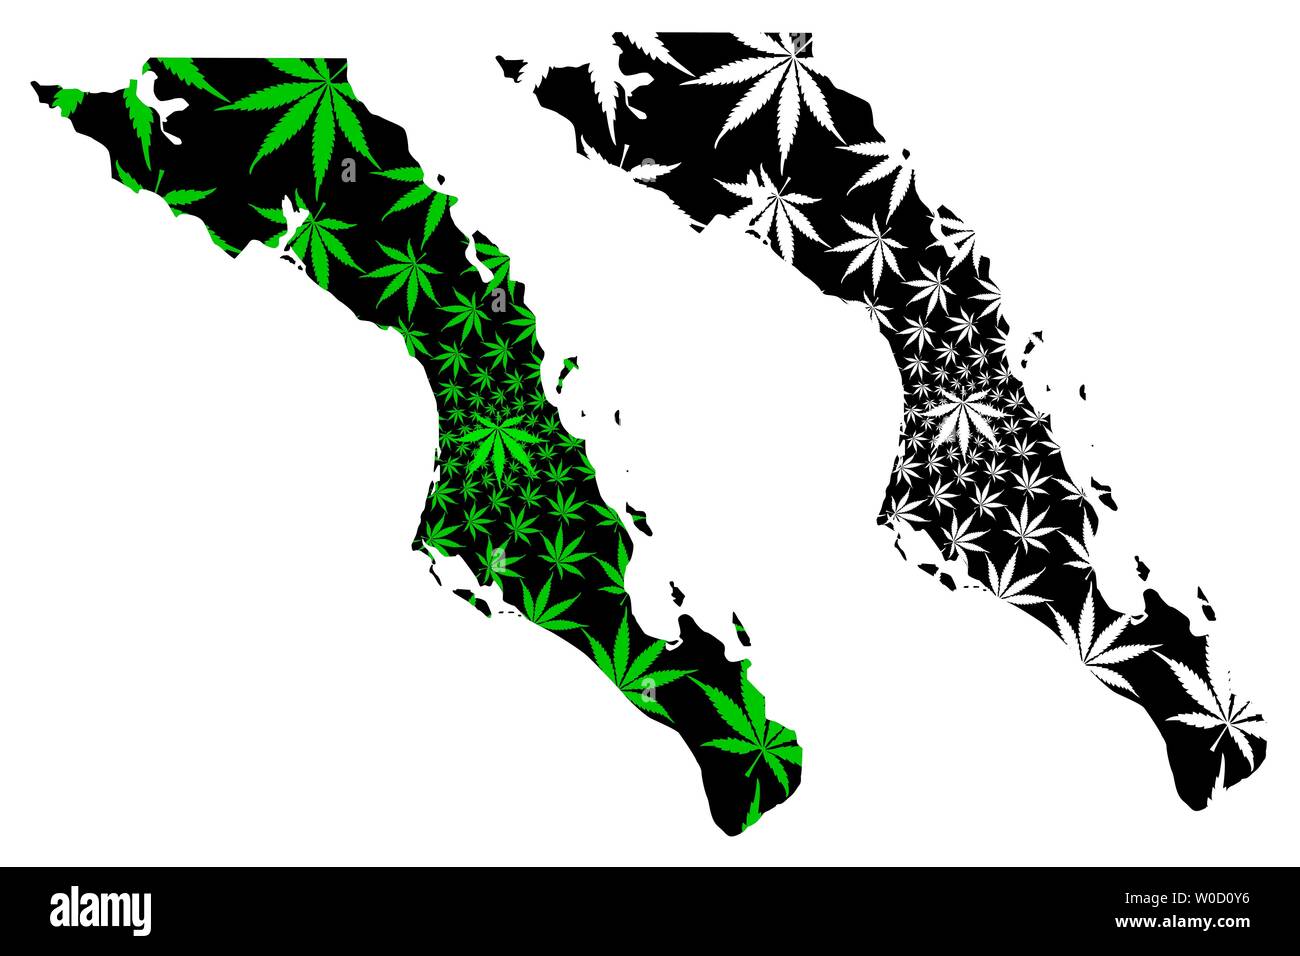 Baja California Sur map is designed cannabis leaf green and black, Estado Libre y Soberano de Baja California Sur (El Territorio Sur de Baja Californi Stock Vector